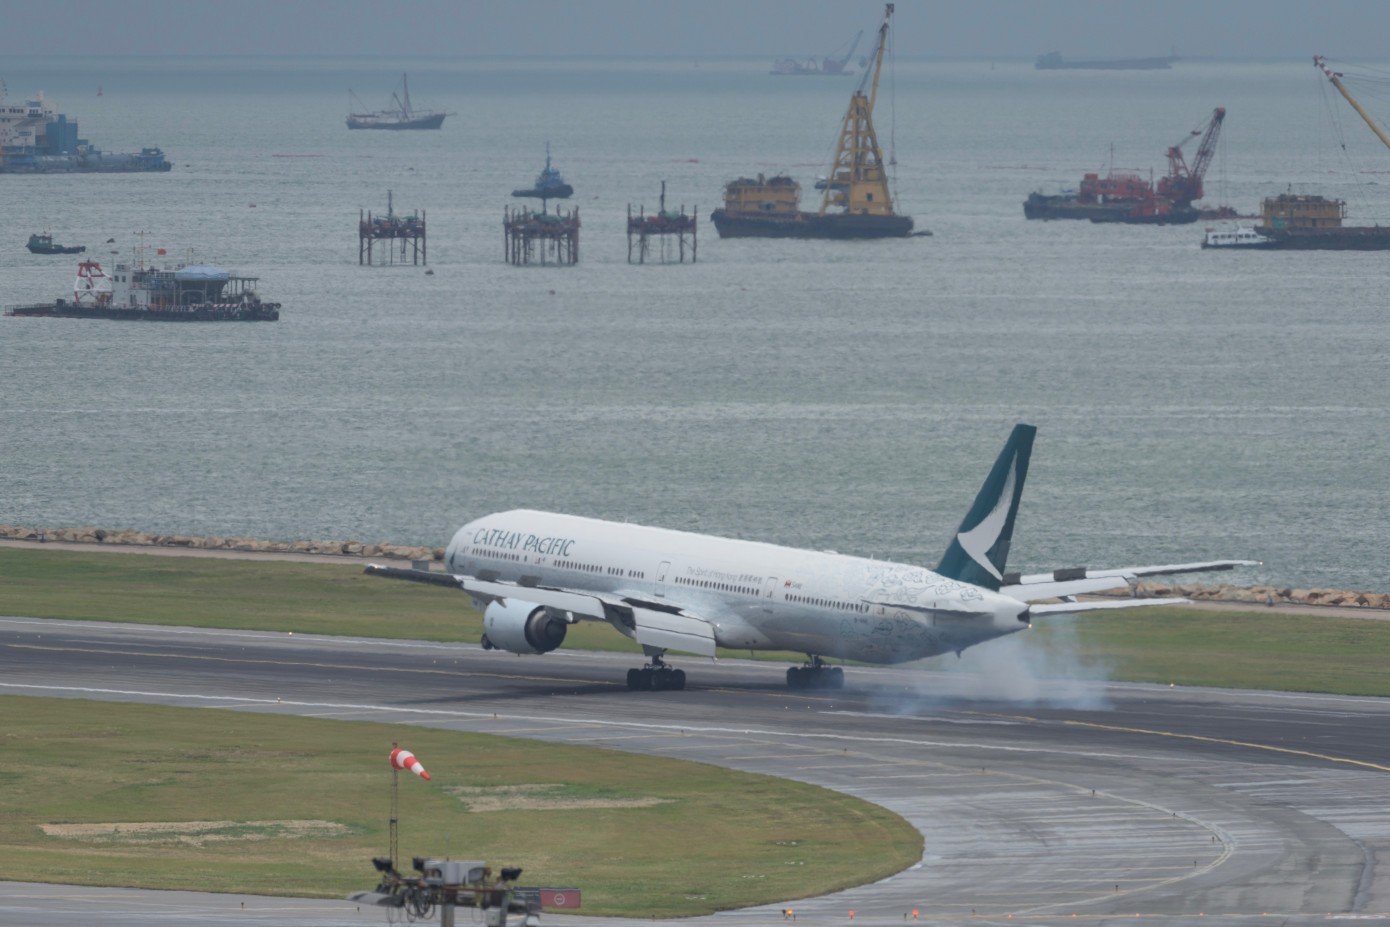 9,4 triệu thông tin hành khách Cathay Pacific bị rò rỉ vì vi phạm dữ liệu